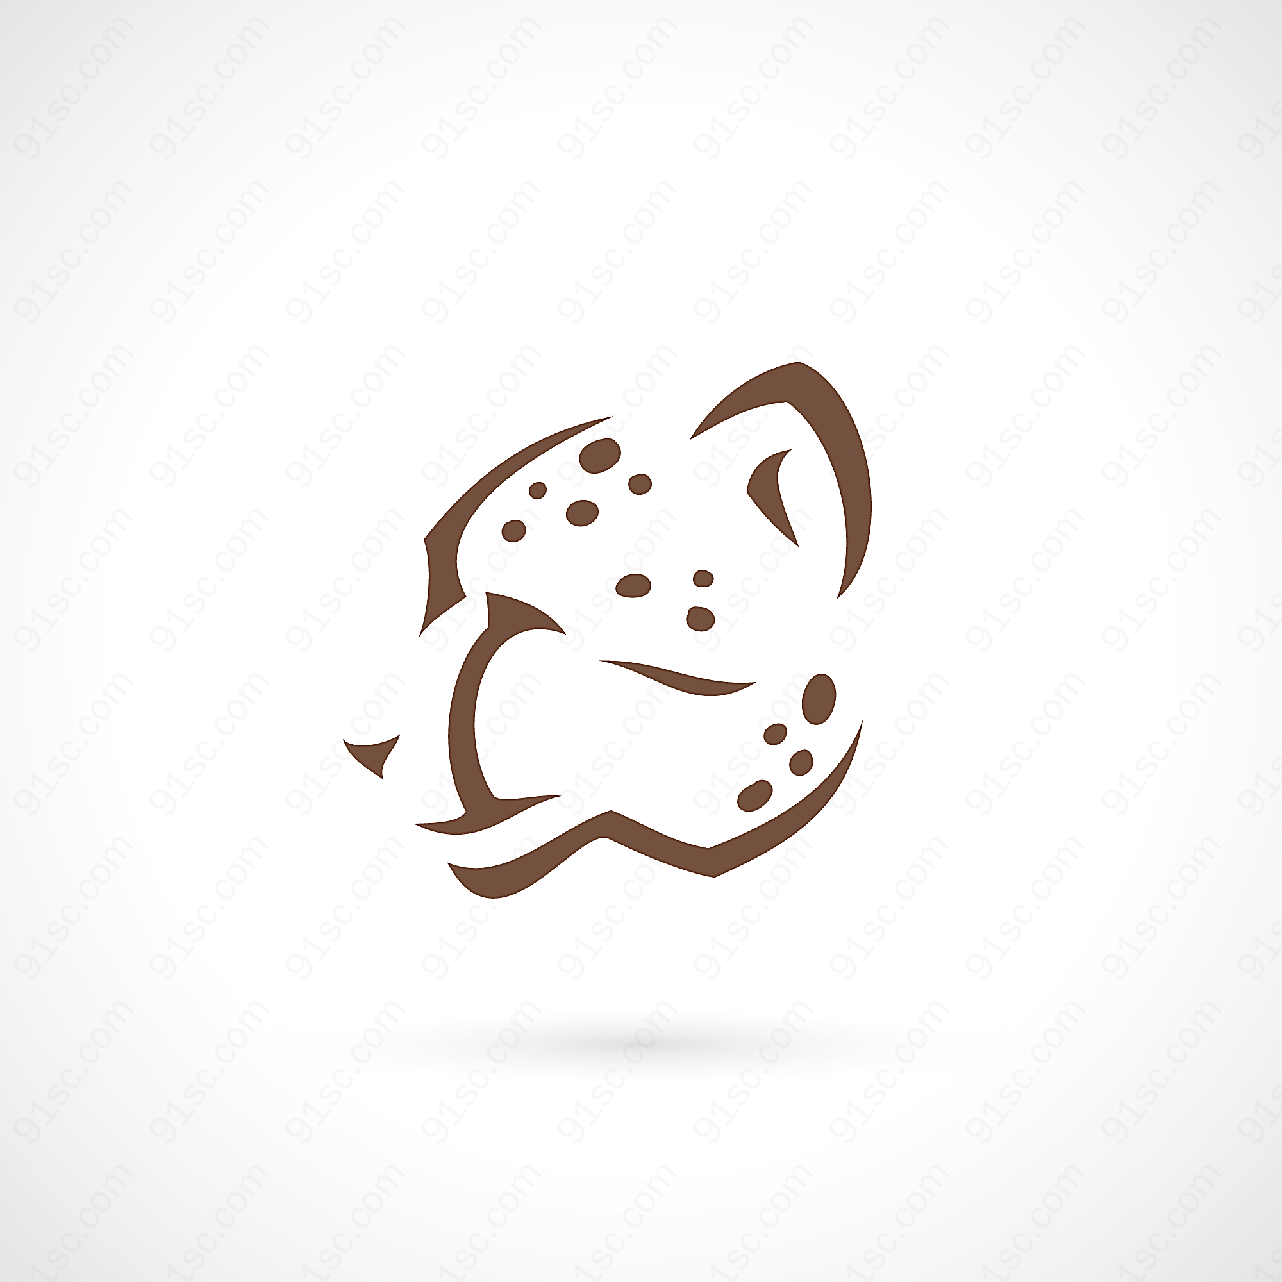 豹子logo设计矢量logo图形